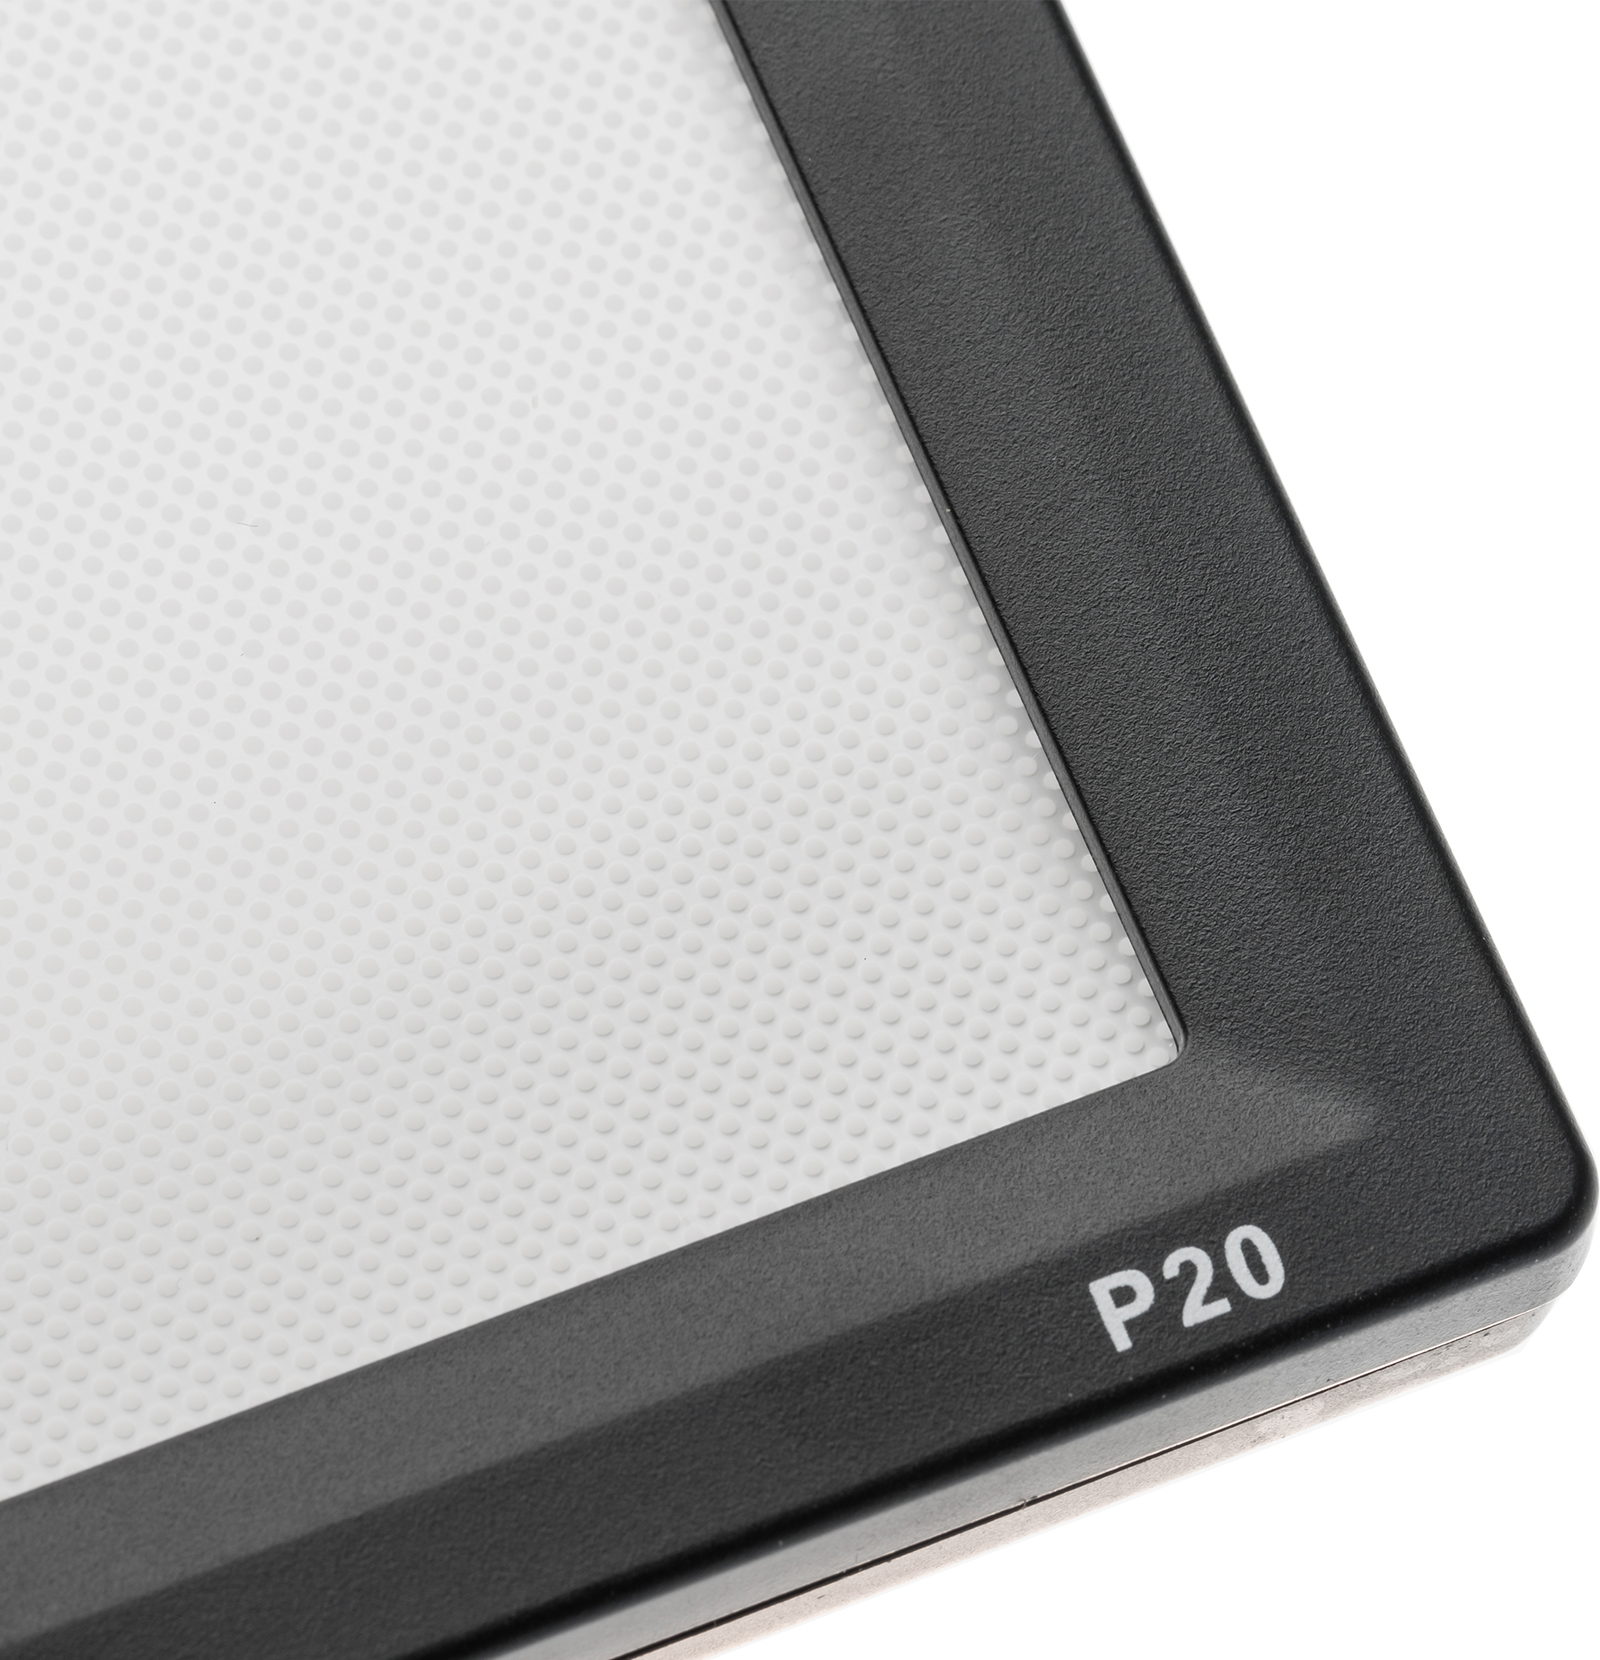 品色Pixel P20 平板超薄摄影灯,超广域色温,100级饱和度,轻薄便携,智能特效,灵活调色